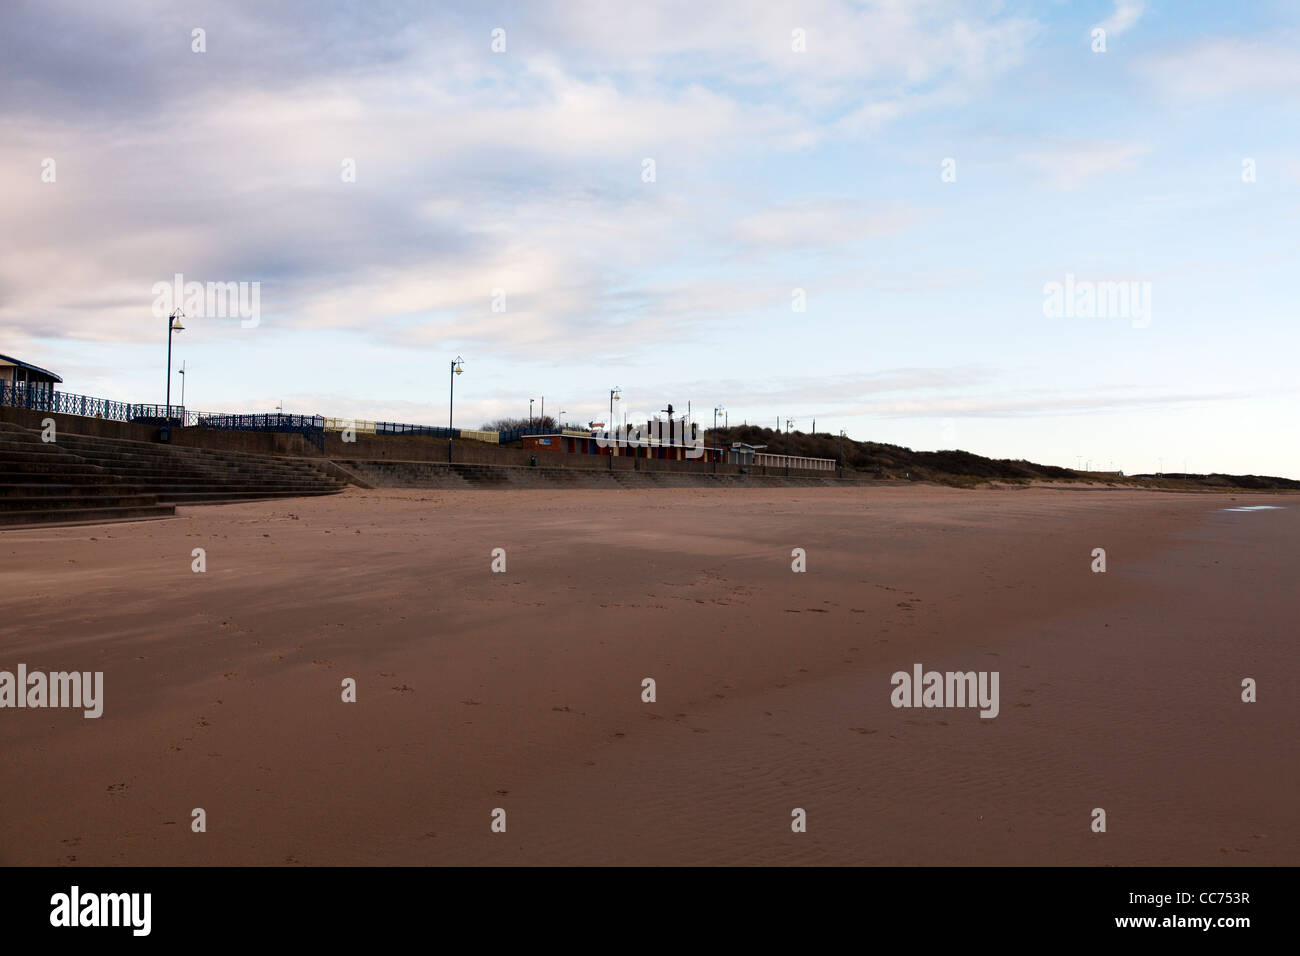 Costa est, Mablethorpe, Lincolnshire beach capanne per la modifica in e utilizzo nei mesi estivi Foto Stock